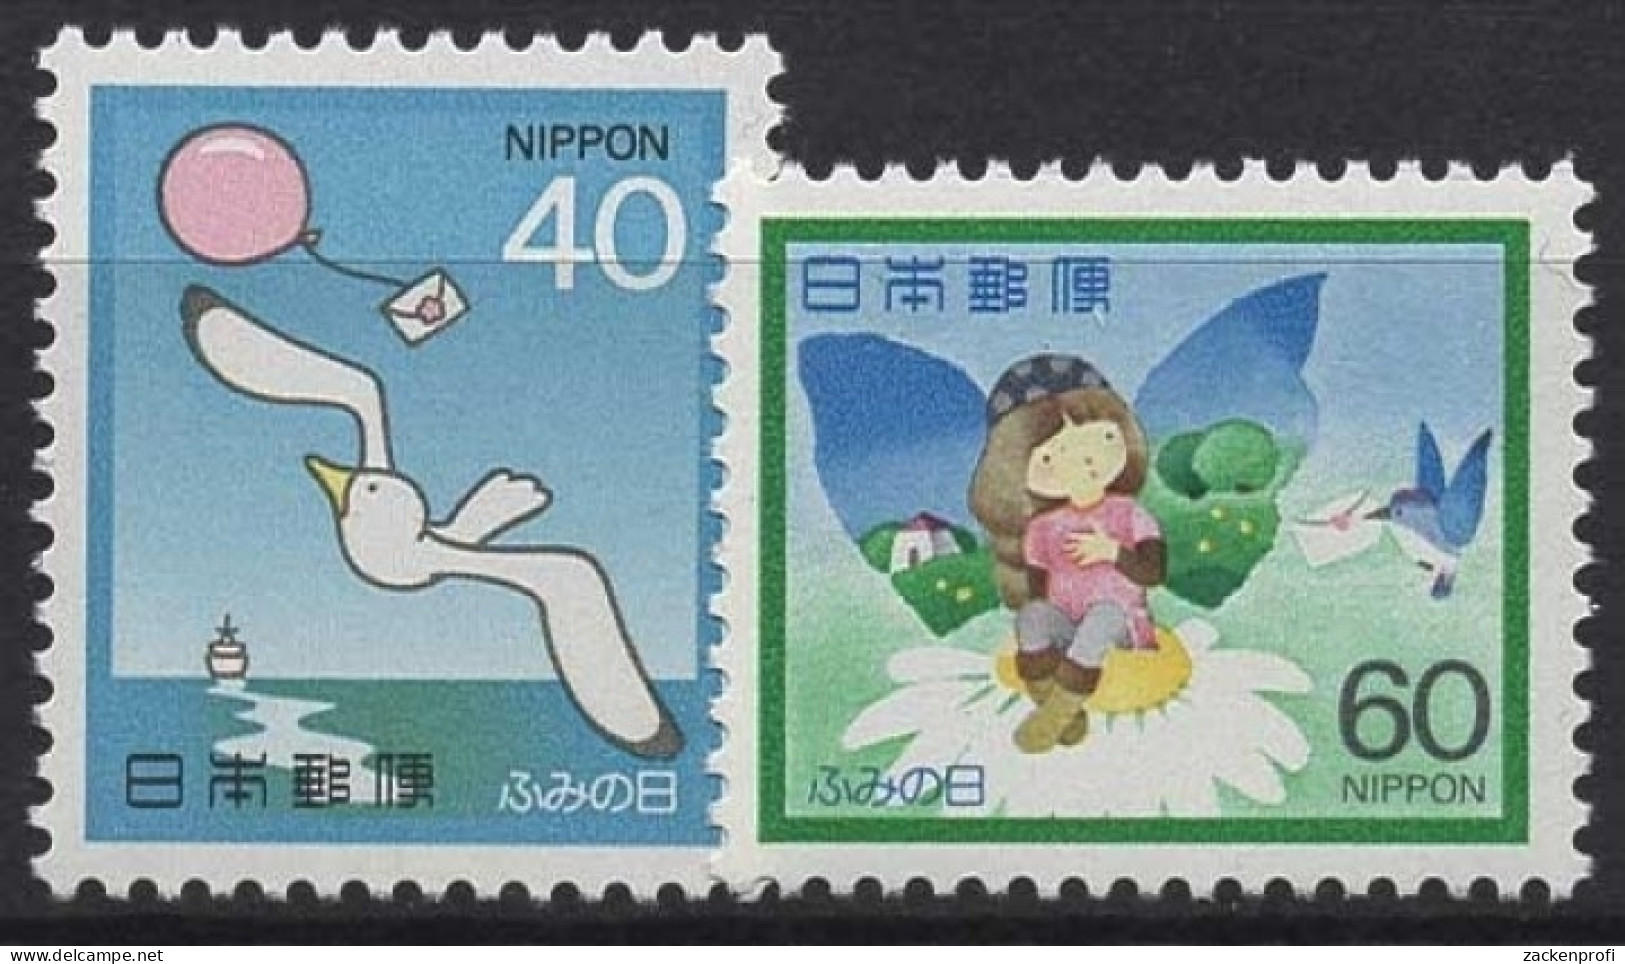 Japan 1982 Möwe Luftballon Mädchen Blume Vogel 1519/20 Postfrisch - Neufs